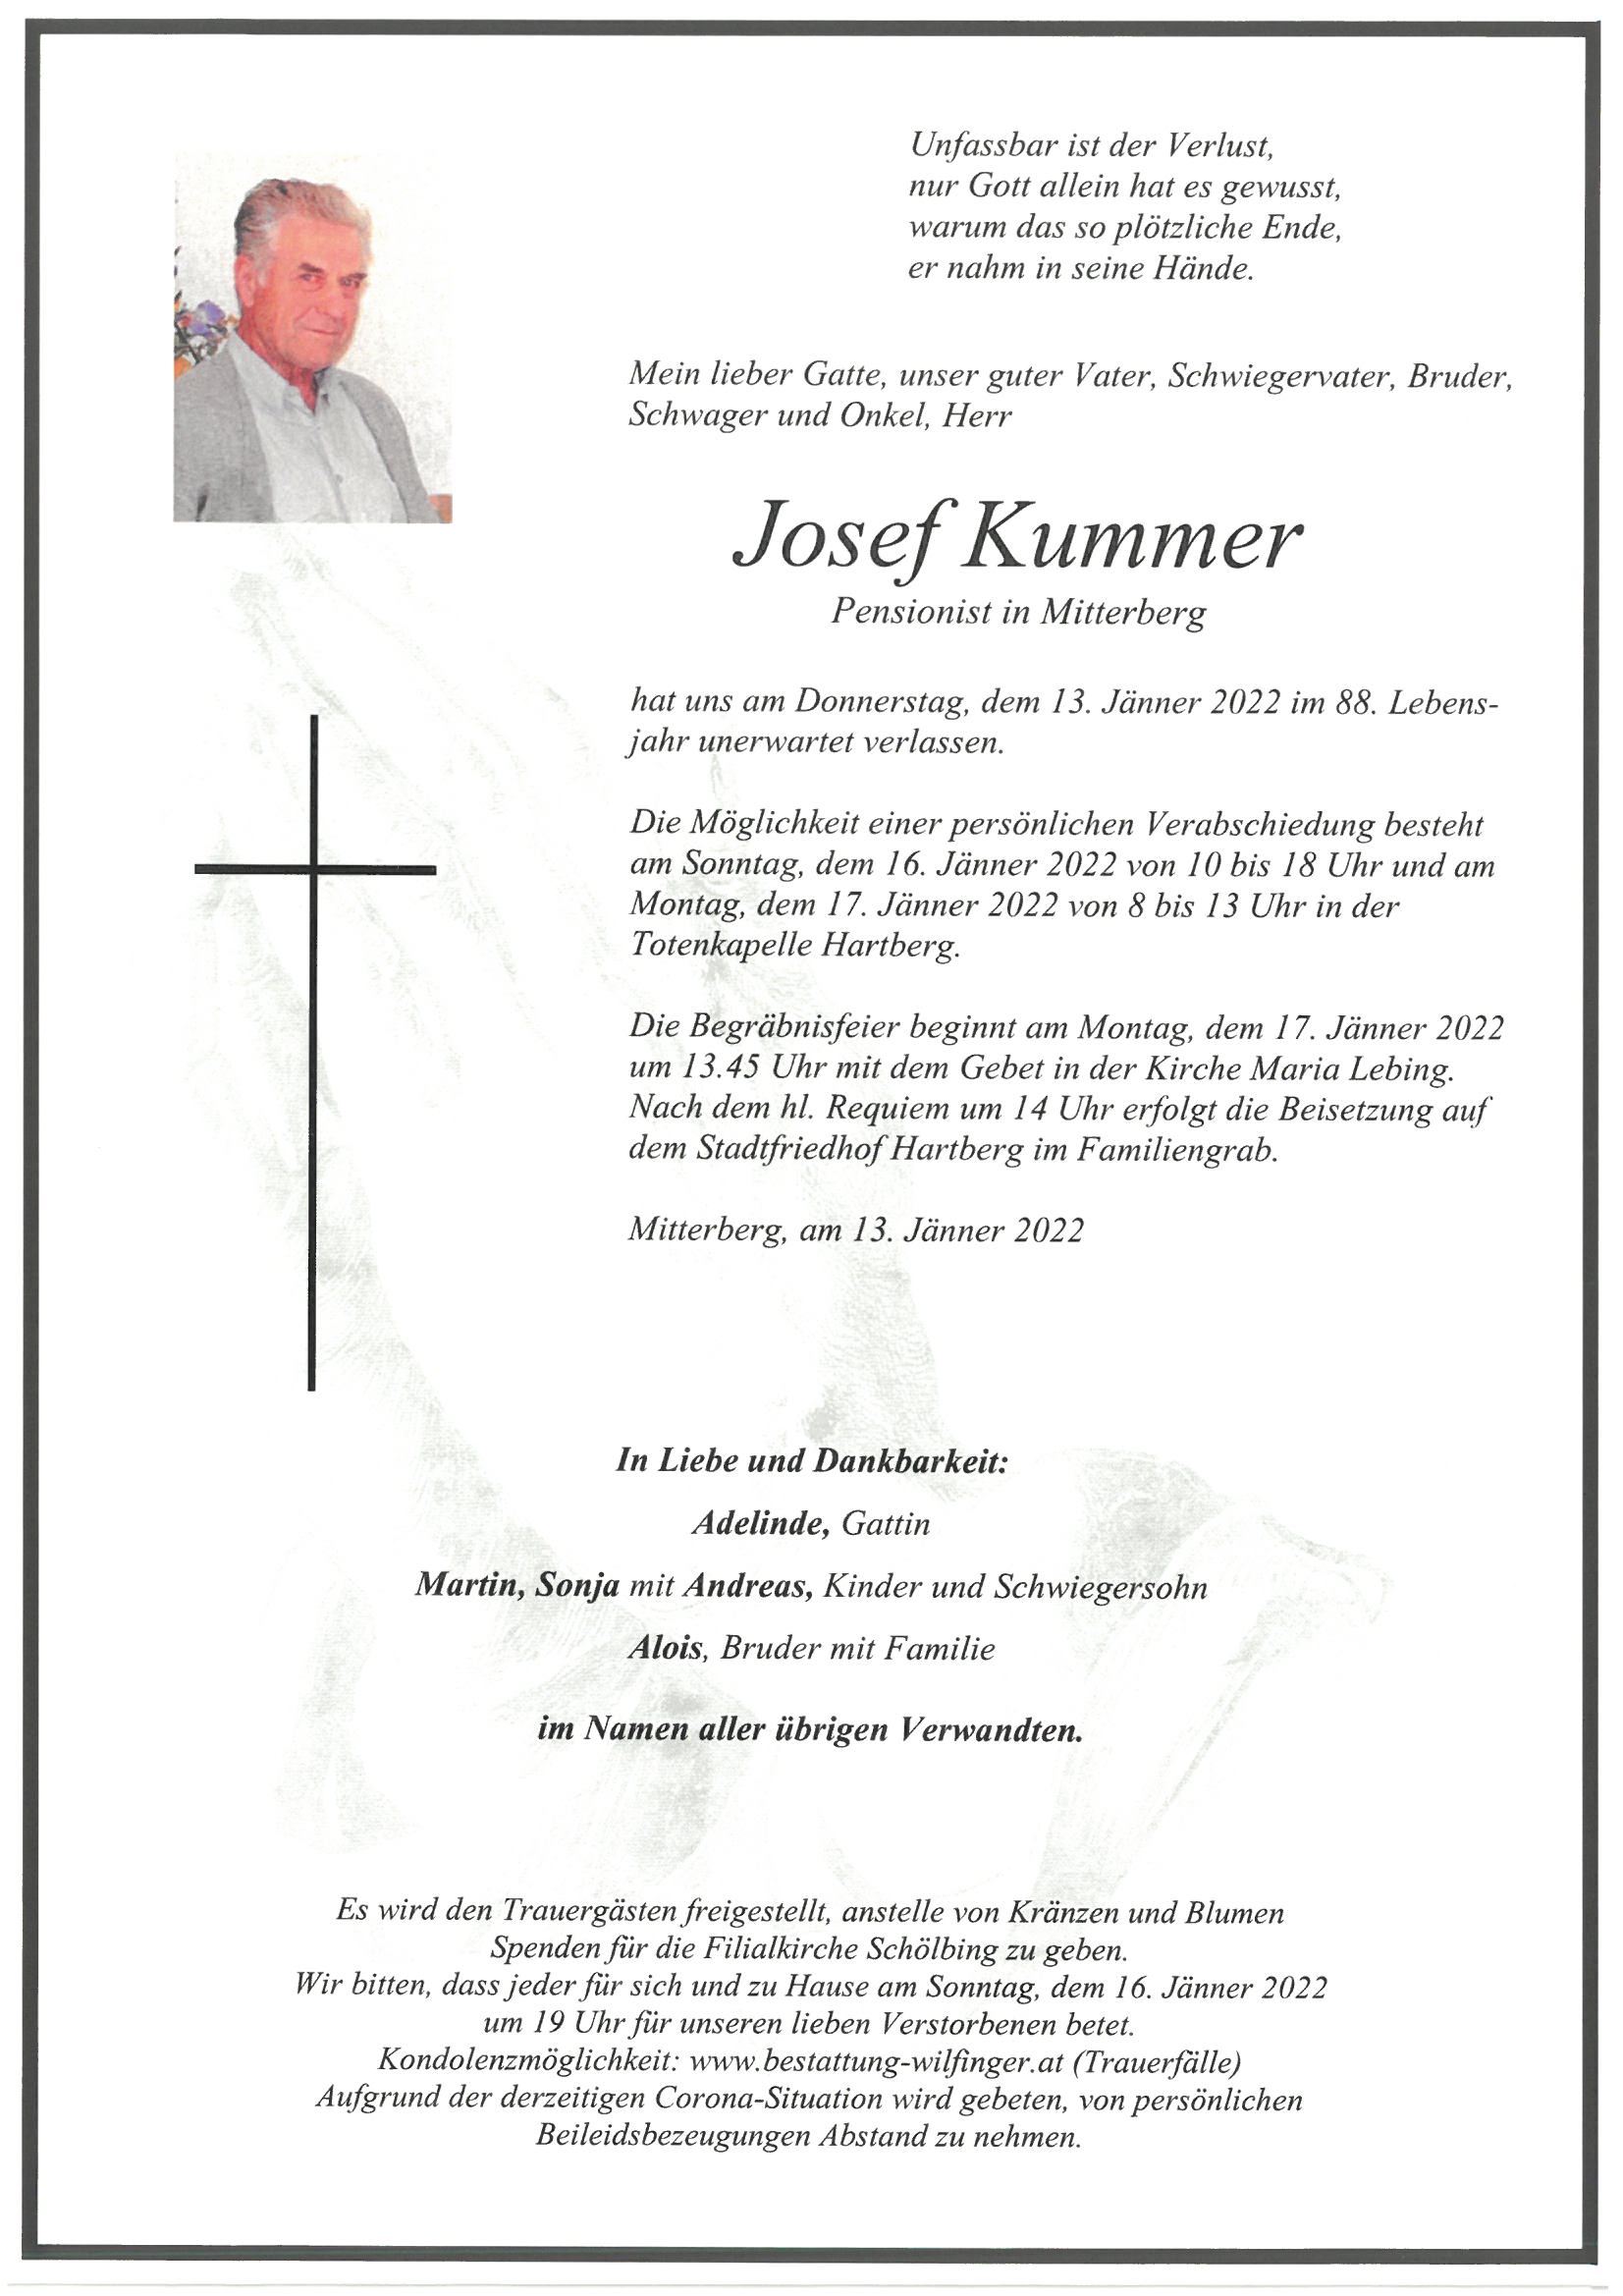 Josef Kummer